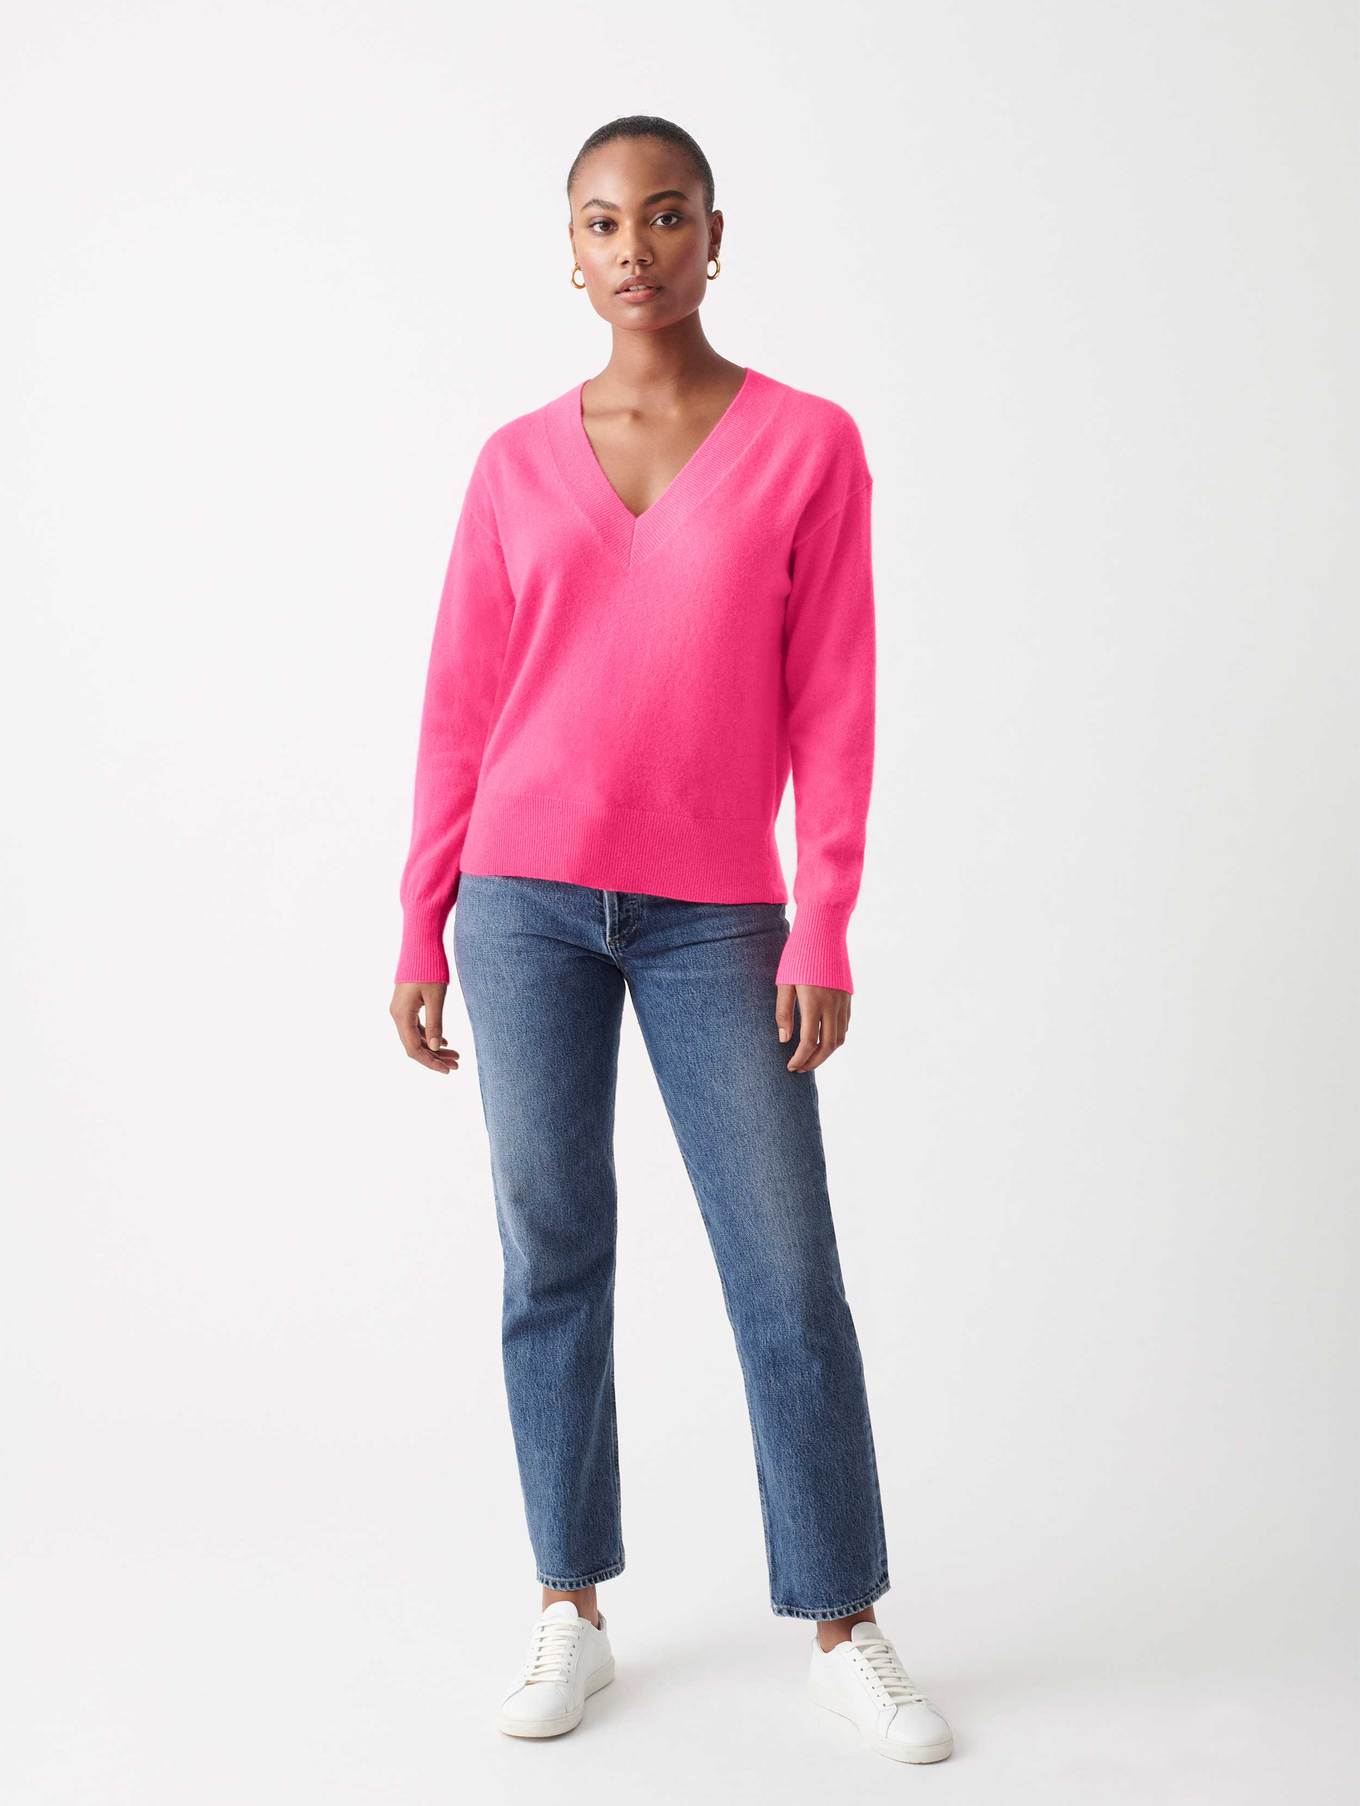 Cashmere v-neck - hot pink